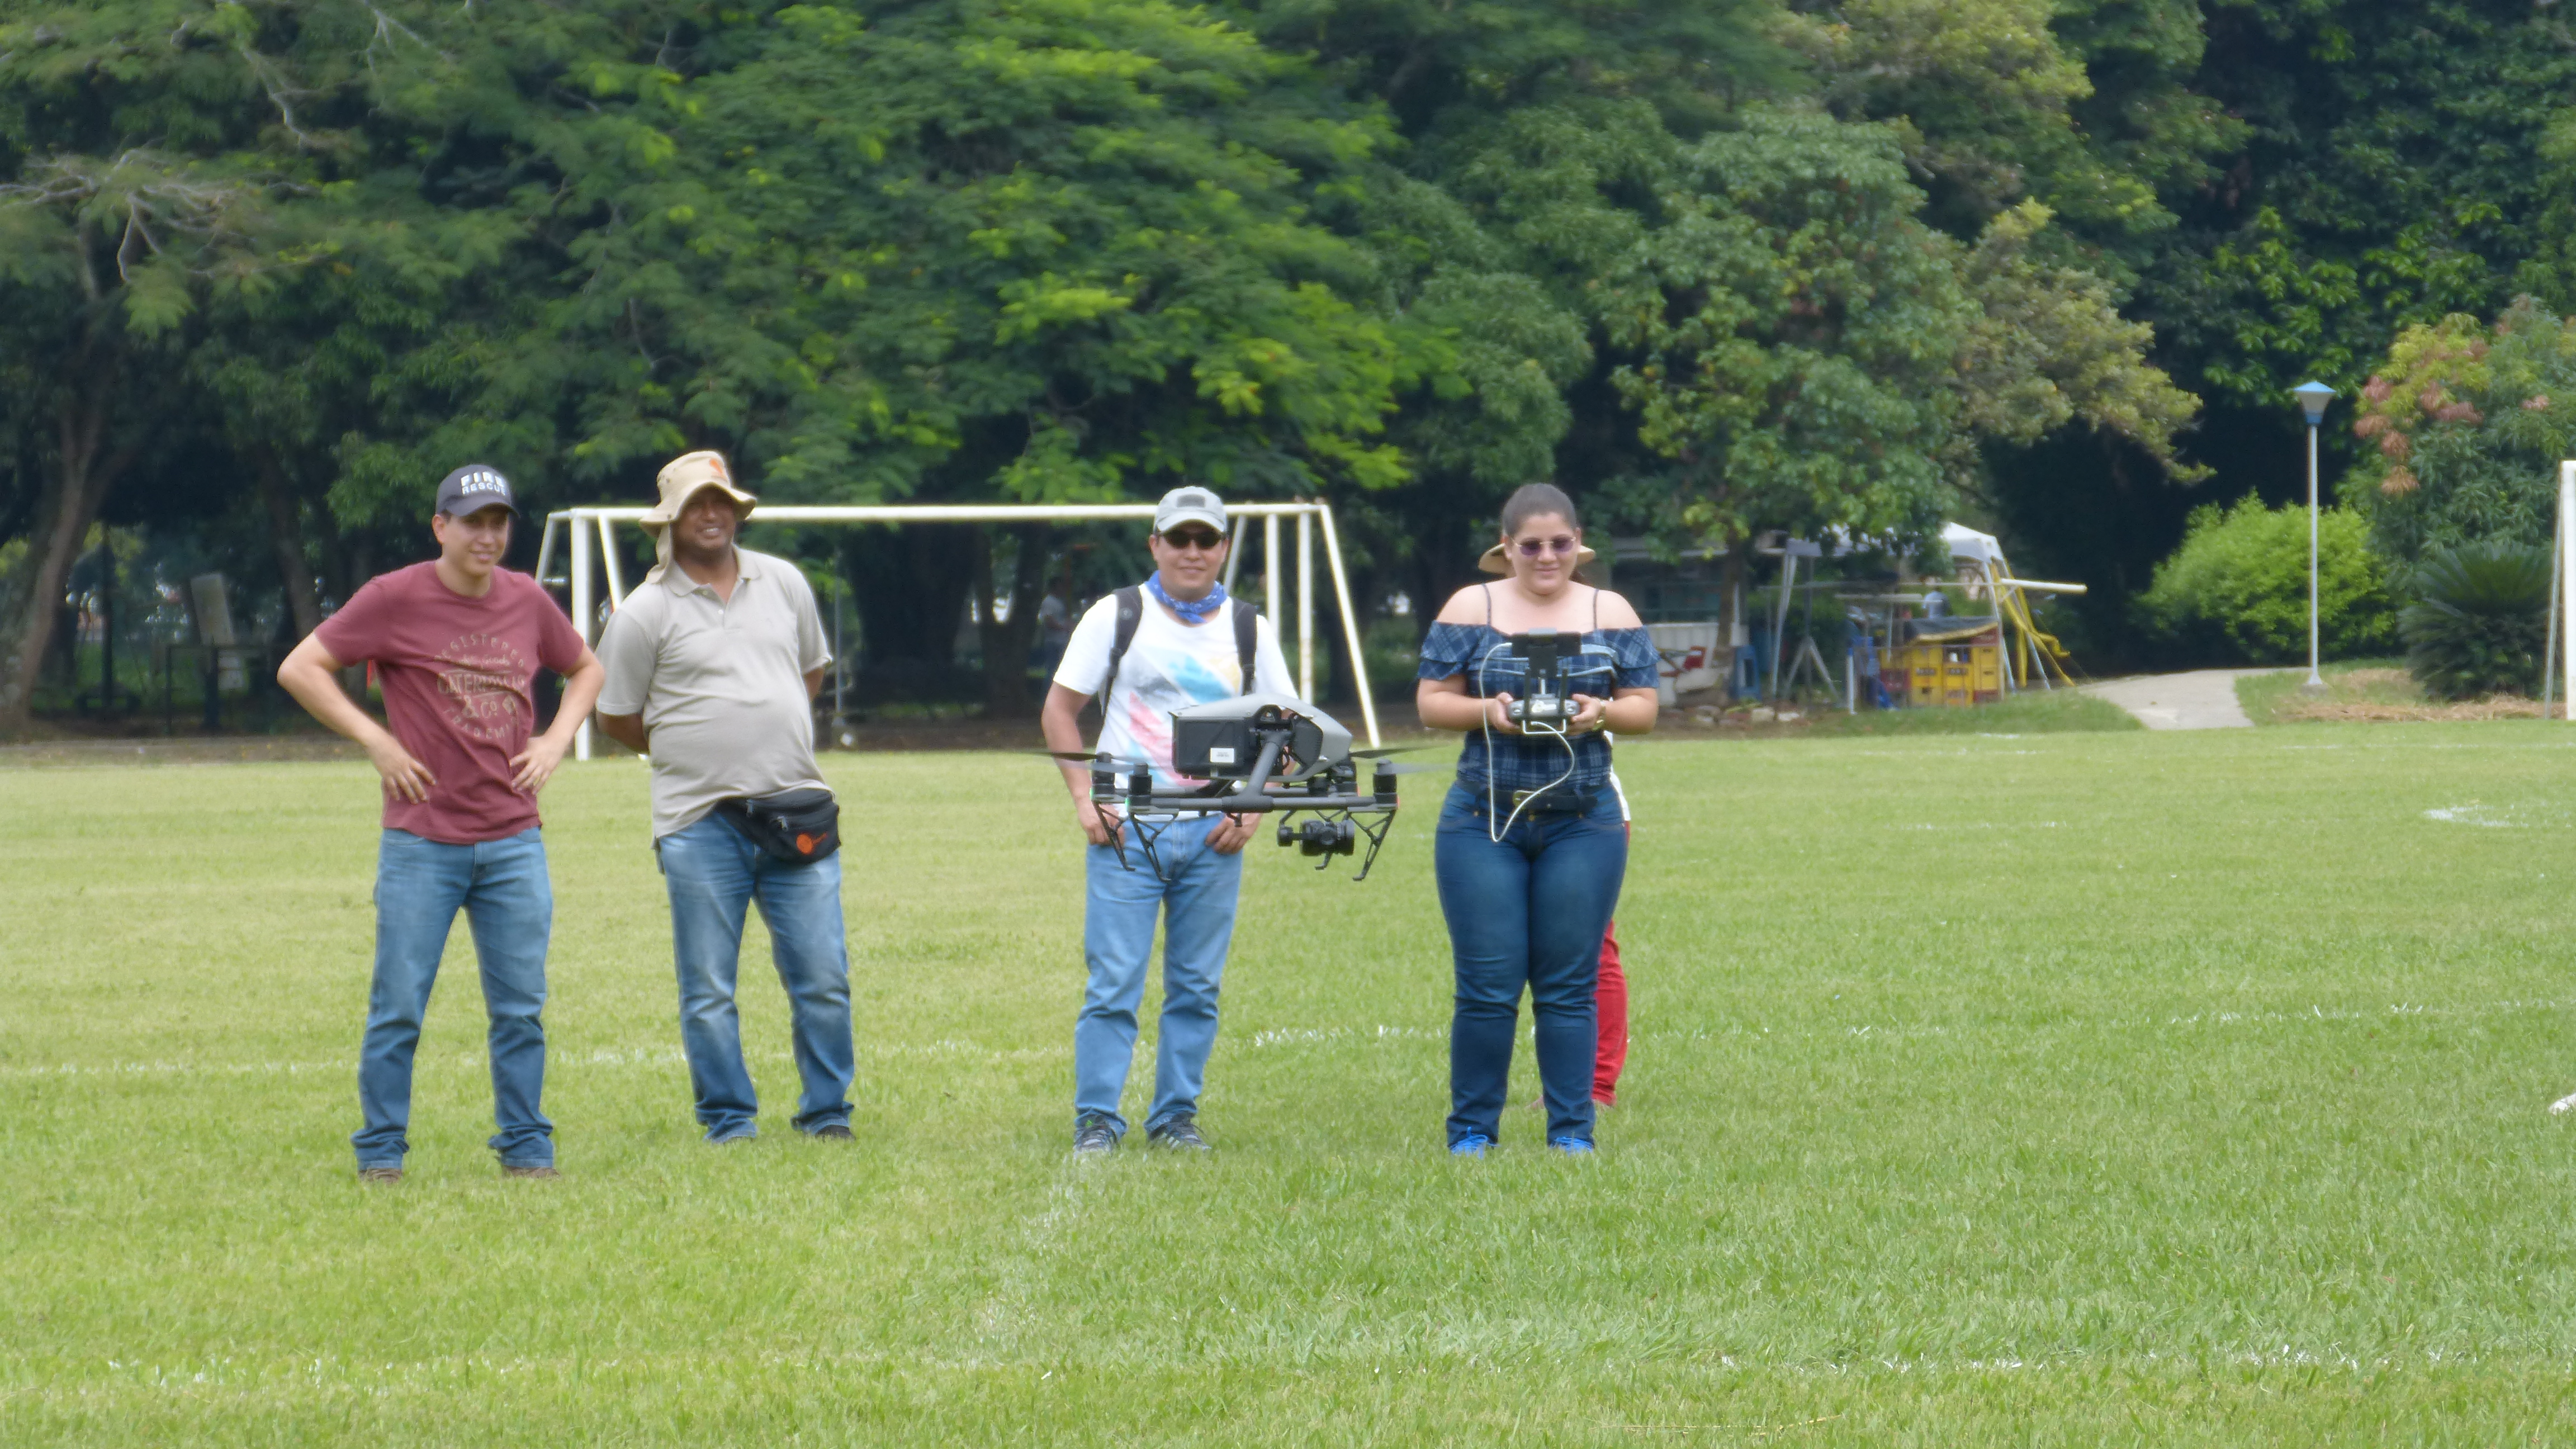 Equipo técnico de Planeación Municipal haciendo pruebas de vuelo con una de las aeronaves (Dron).